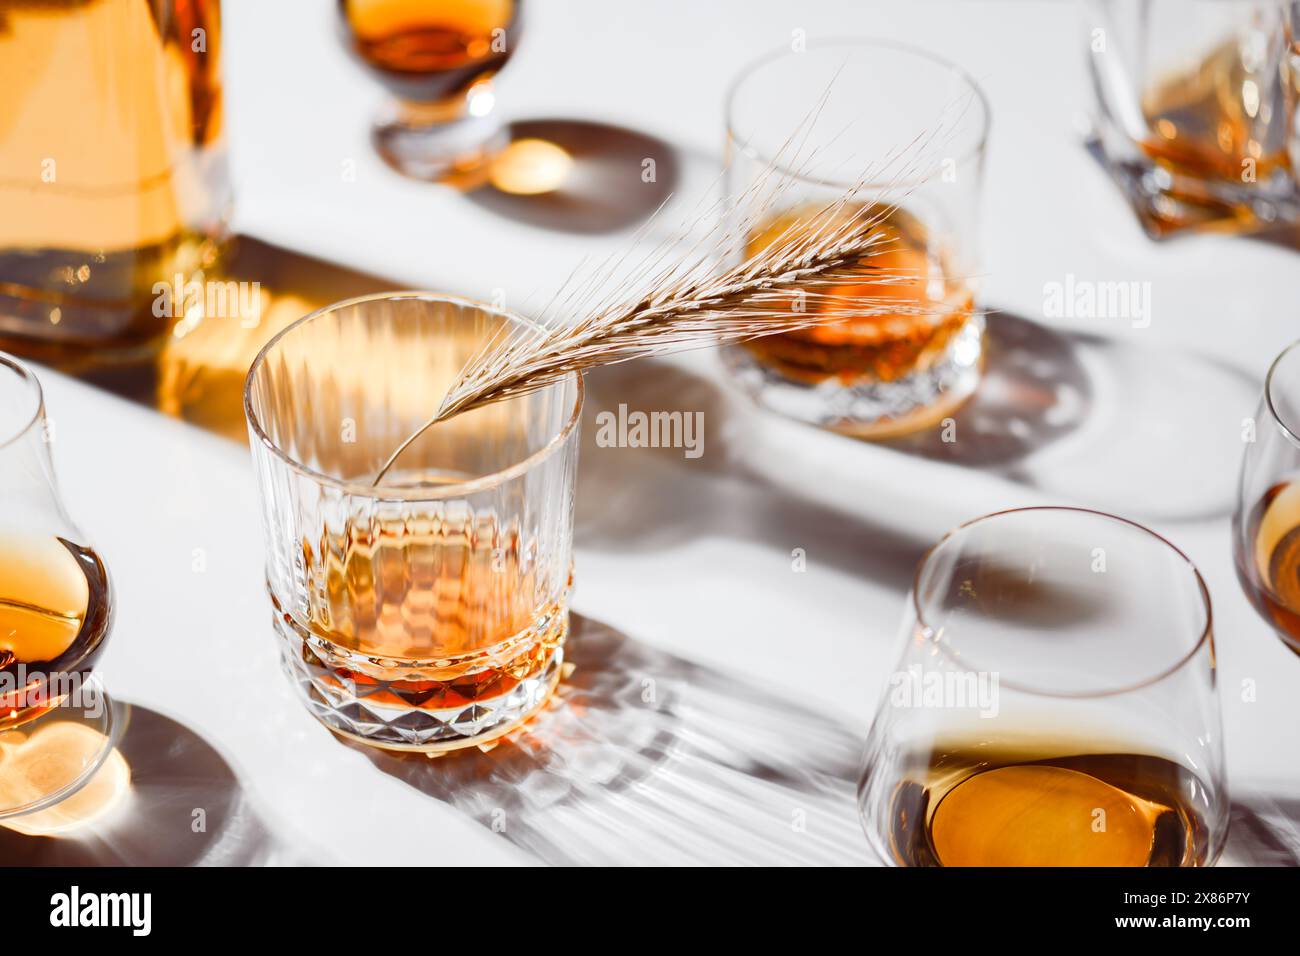 Verres de forme différente avec whisky sur table blanche. Décoration de pointe d'orge séchée. Concept d'alcool Banque D'Images